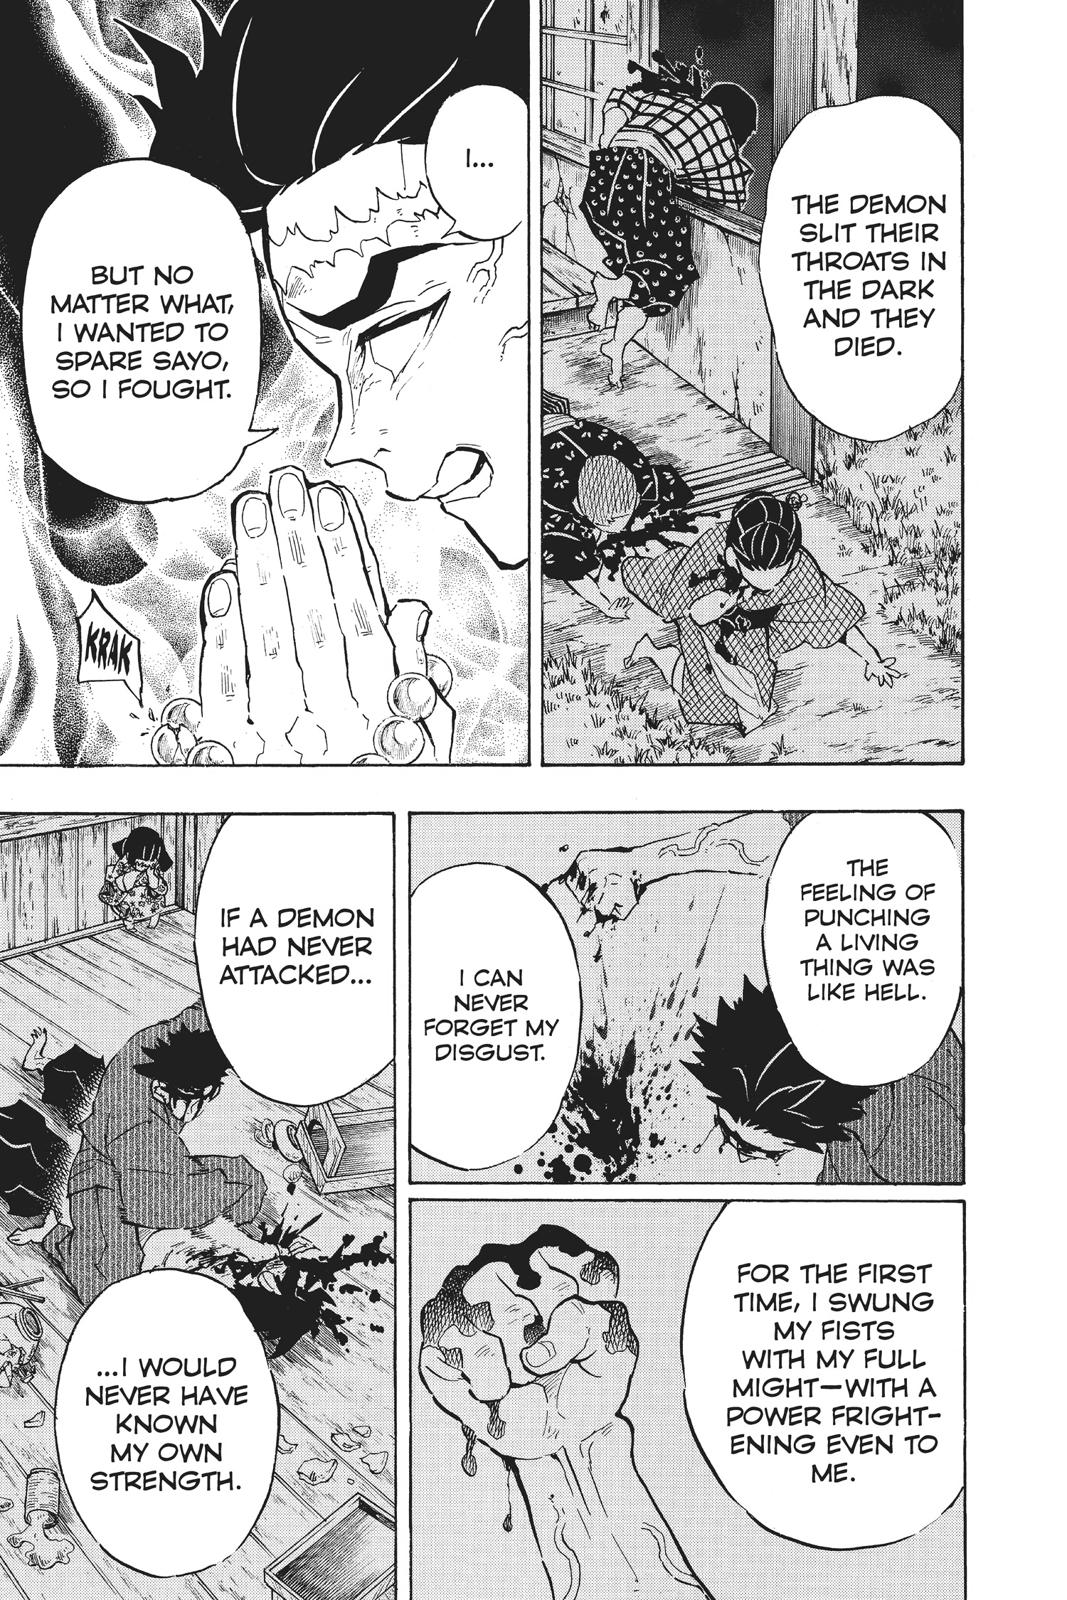 Demon Slayer Manga Manga Chapter - 135 - image 12